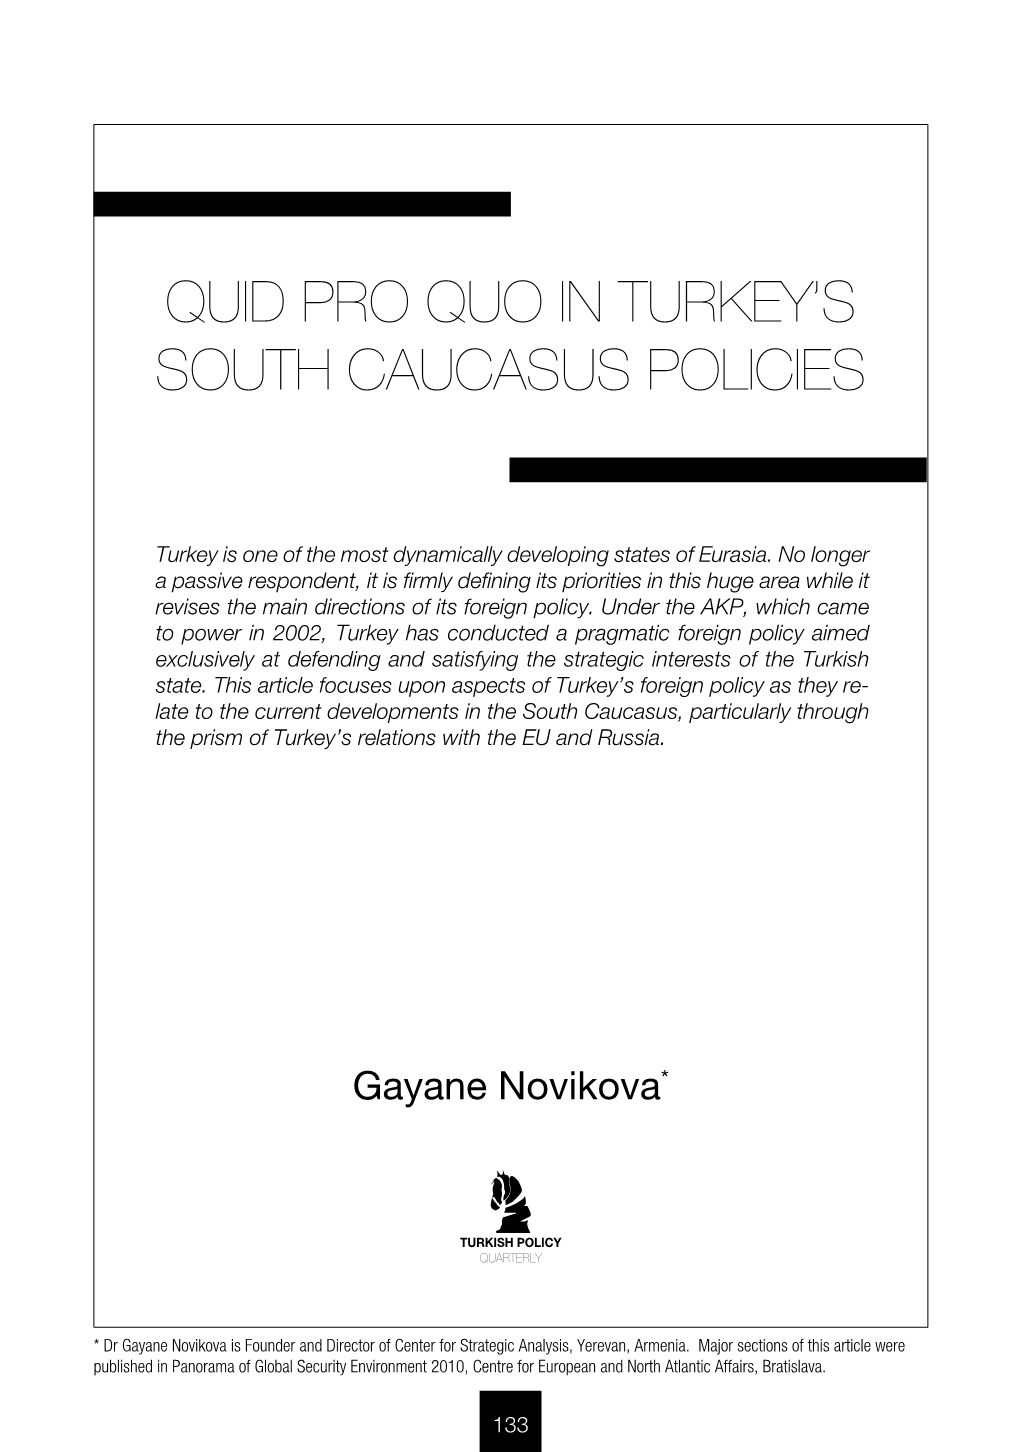 Quid Pro Quo in Turkey's South Caucasus Policies